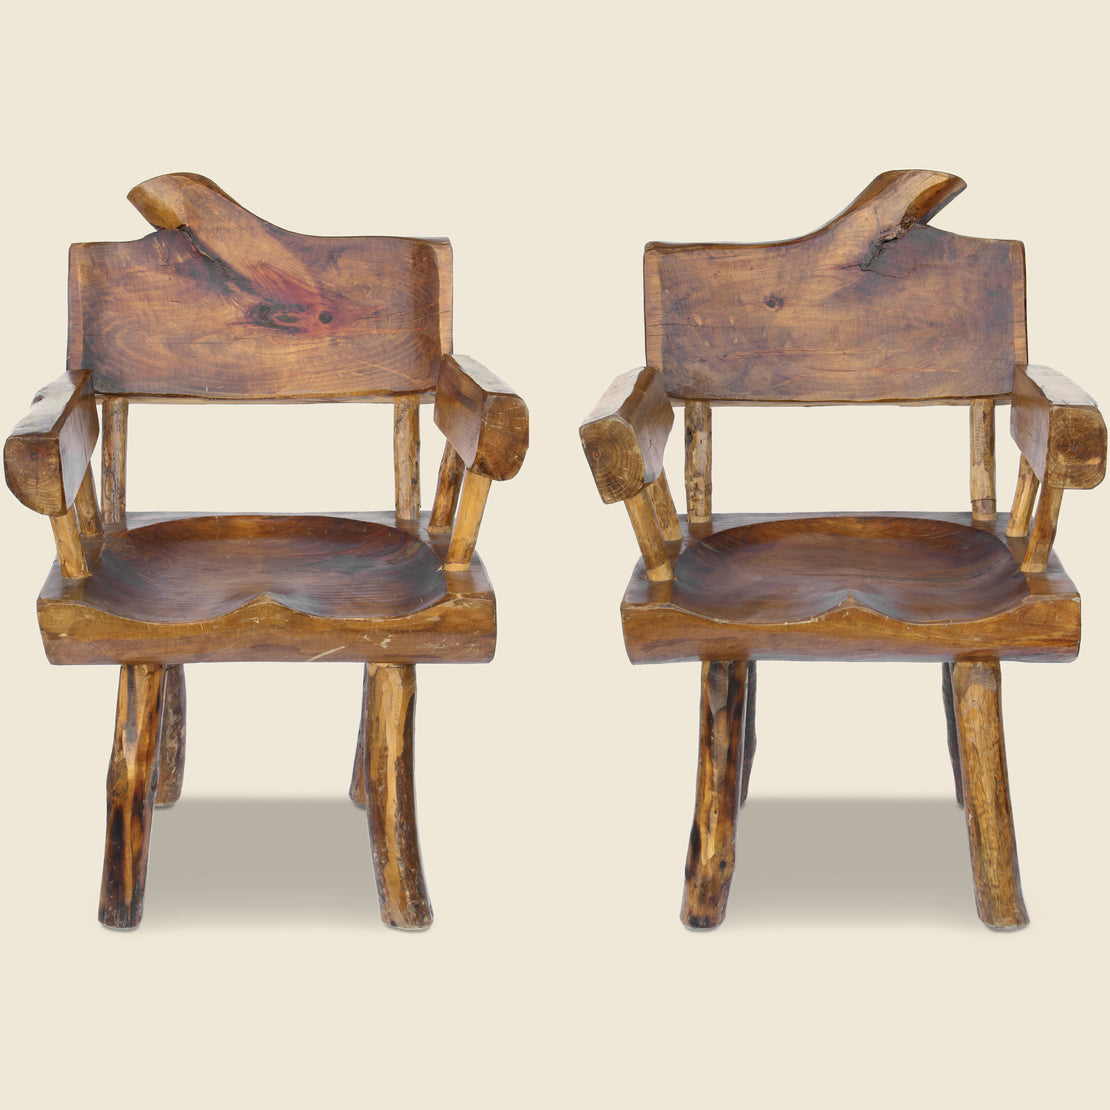 Vintage Pair of Vintage Rustic Wood Chairs